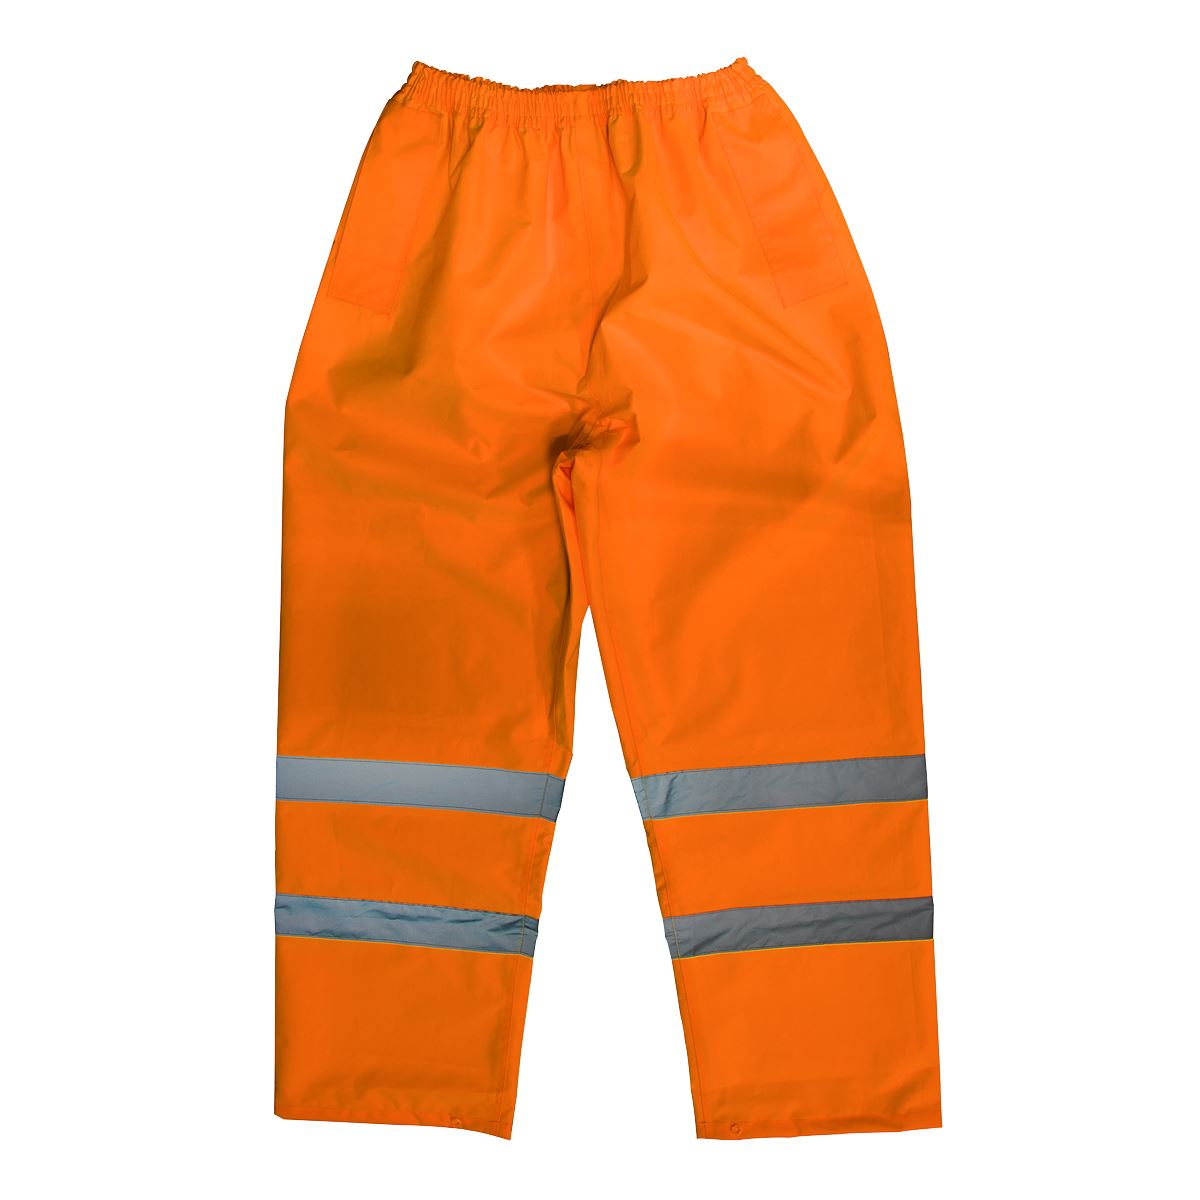 Worksafe by Sealey Hi-Vis Orange Waterproof Trousers - X-Large